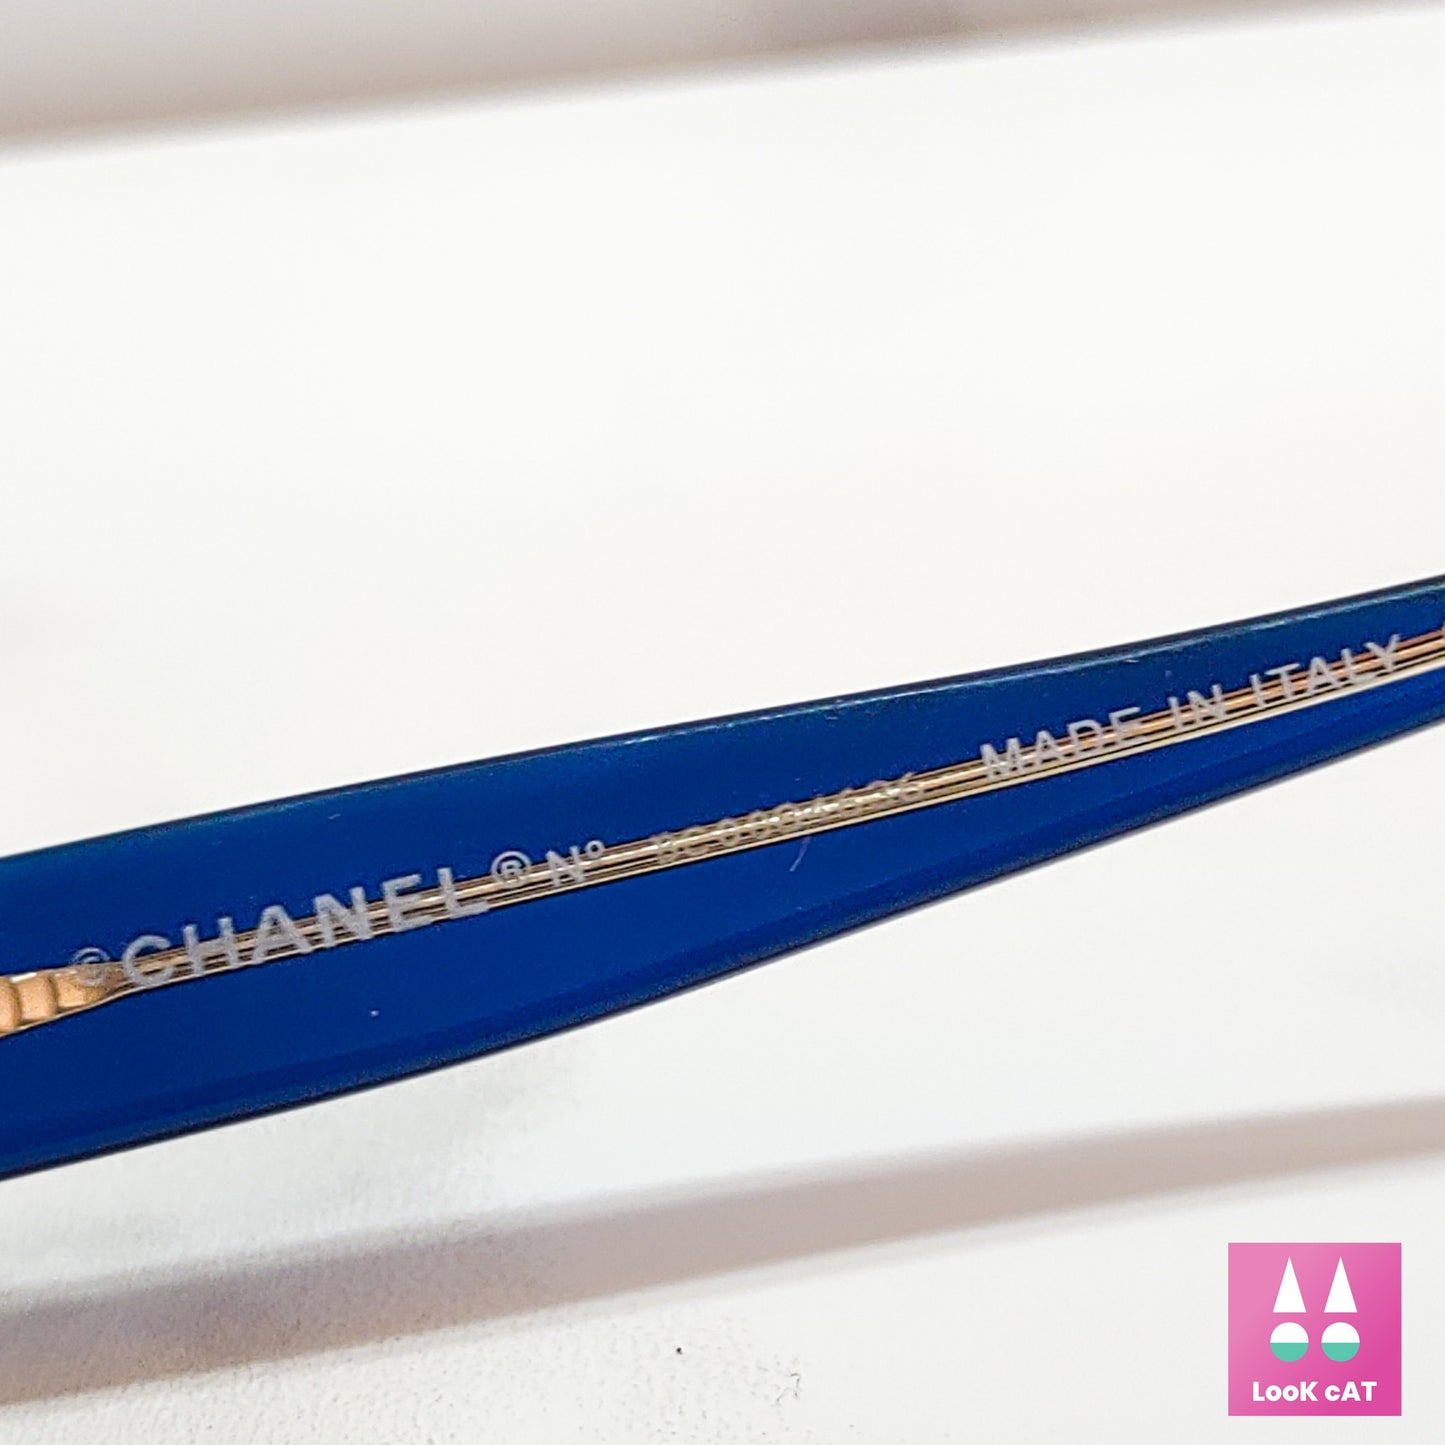 Occhiali da sole Chanel modello 3075 vintage lunetta brille tonalità y2k senza montatura